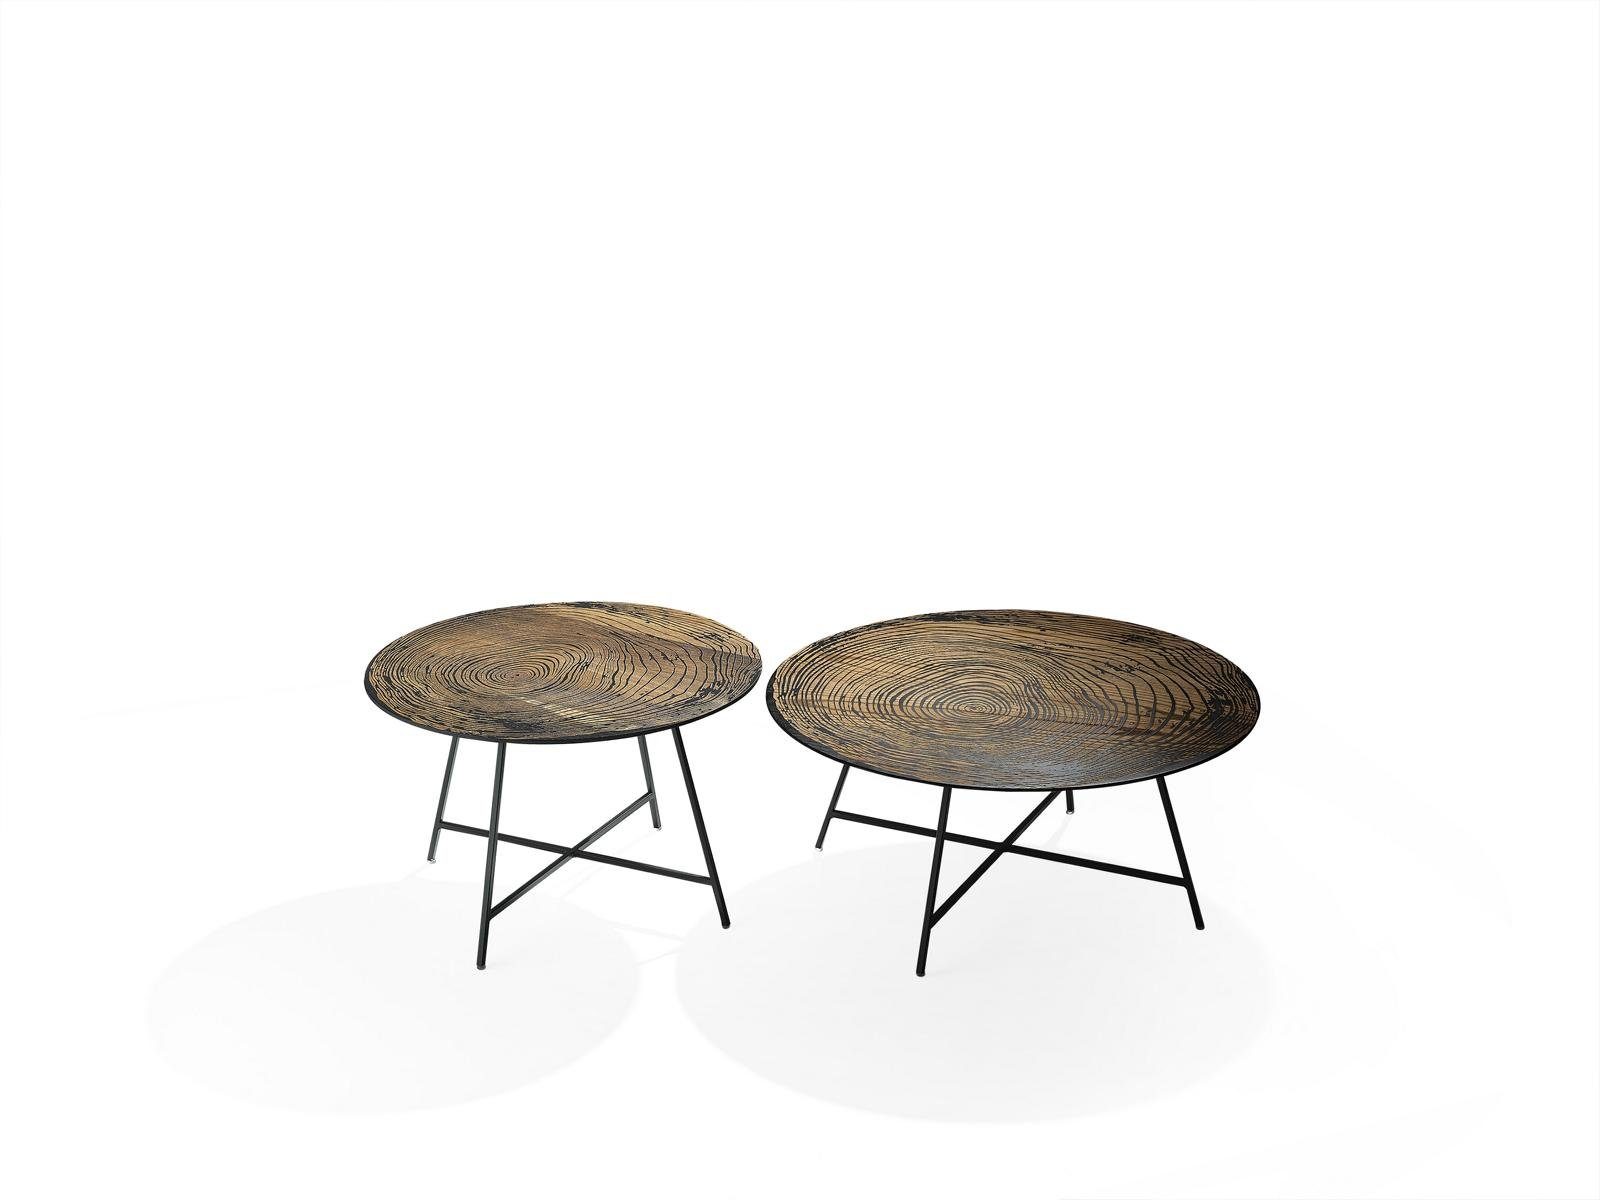 JVmoebel Couchtisch Modern Möbel Made (2x Europe Holz Design Couchtische Rund Couchtische), 2x Couchtische in